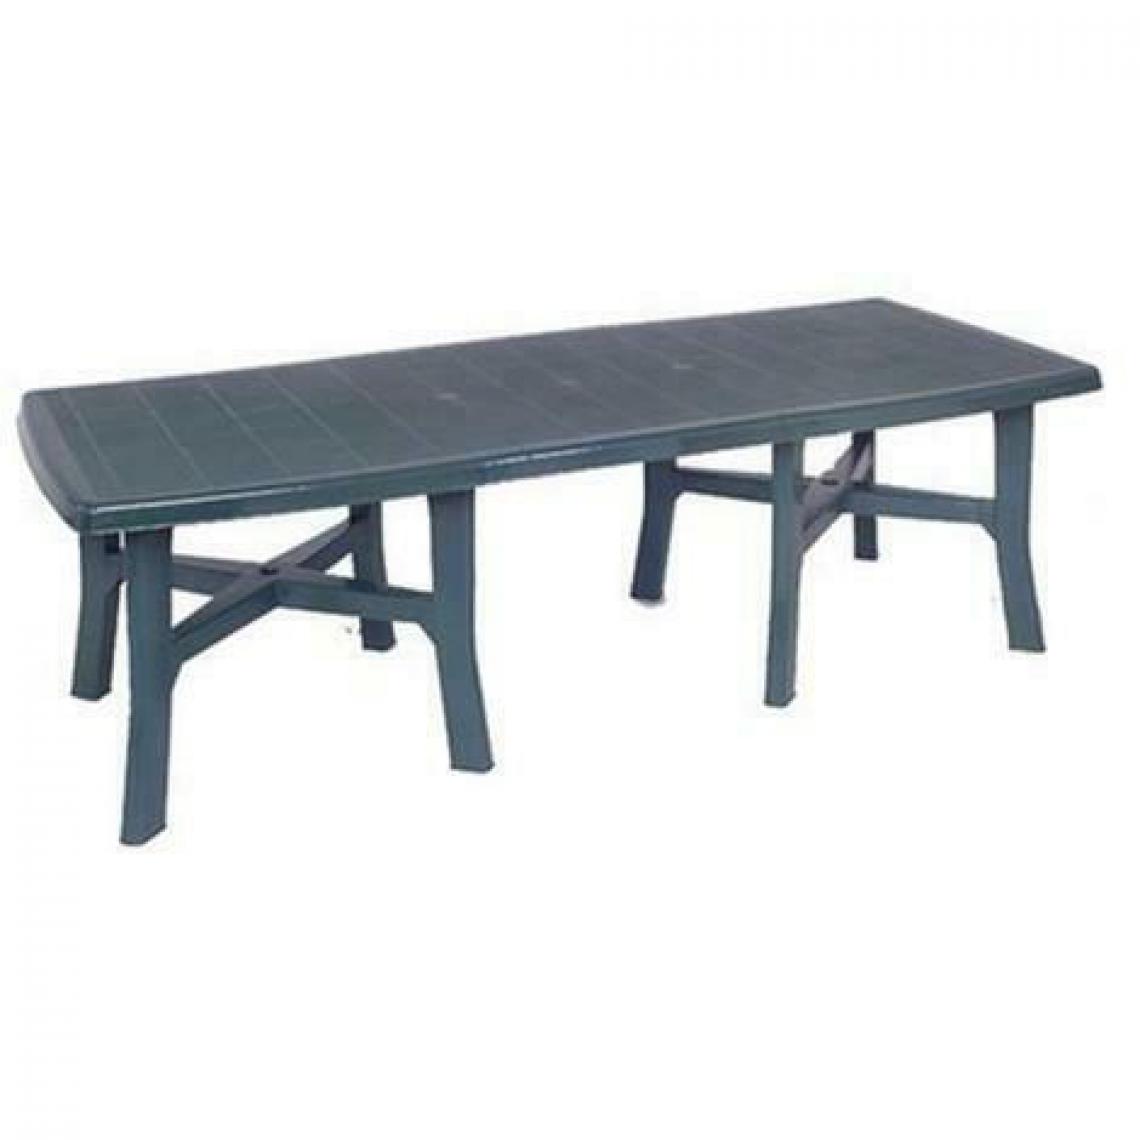 Alter - Table d'extérieur rectangulaire extensible, Made in Italy, 160x100x72 cm (fermé), couleur Vert - Tables à manger